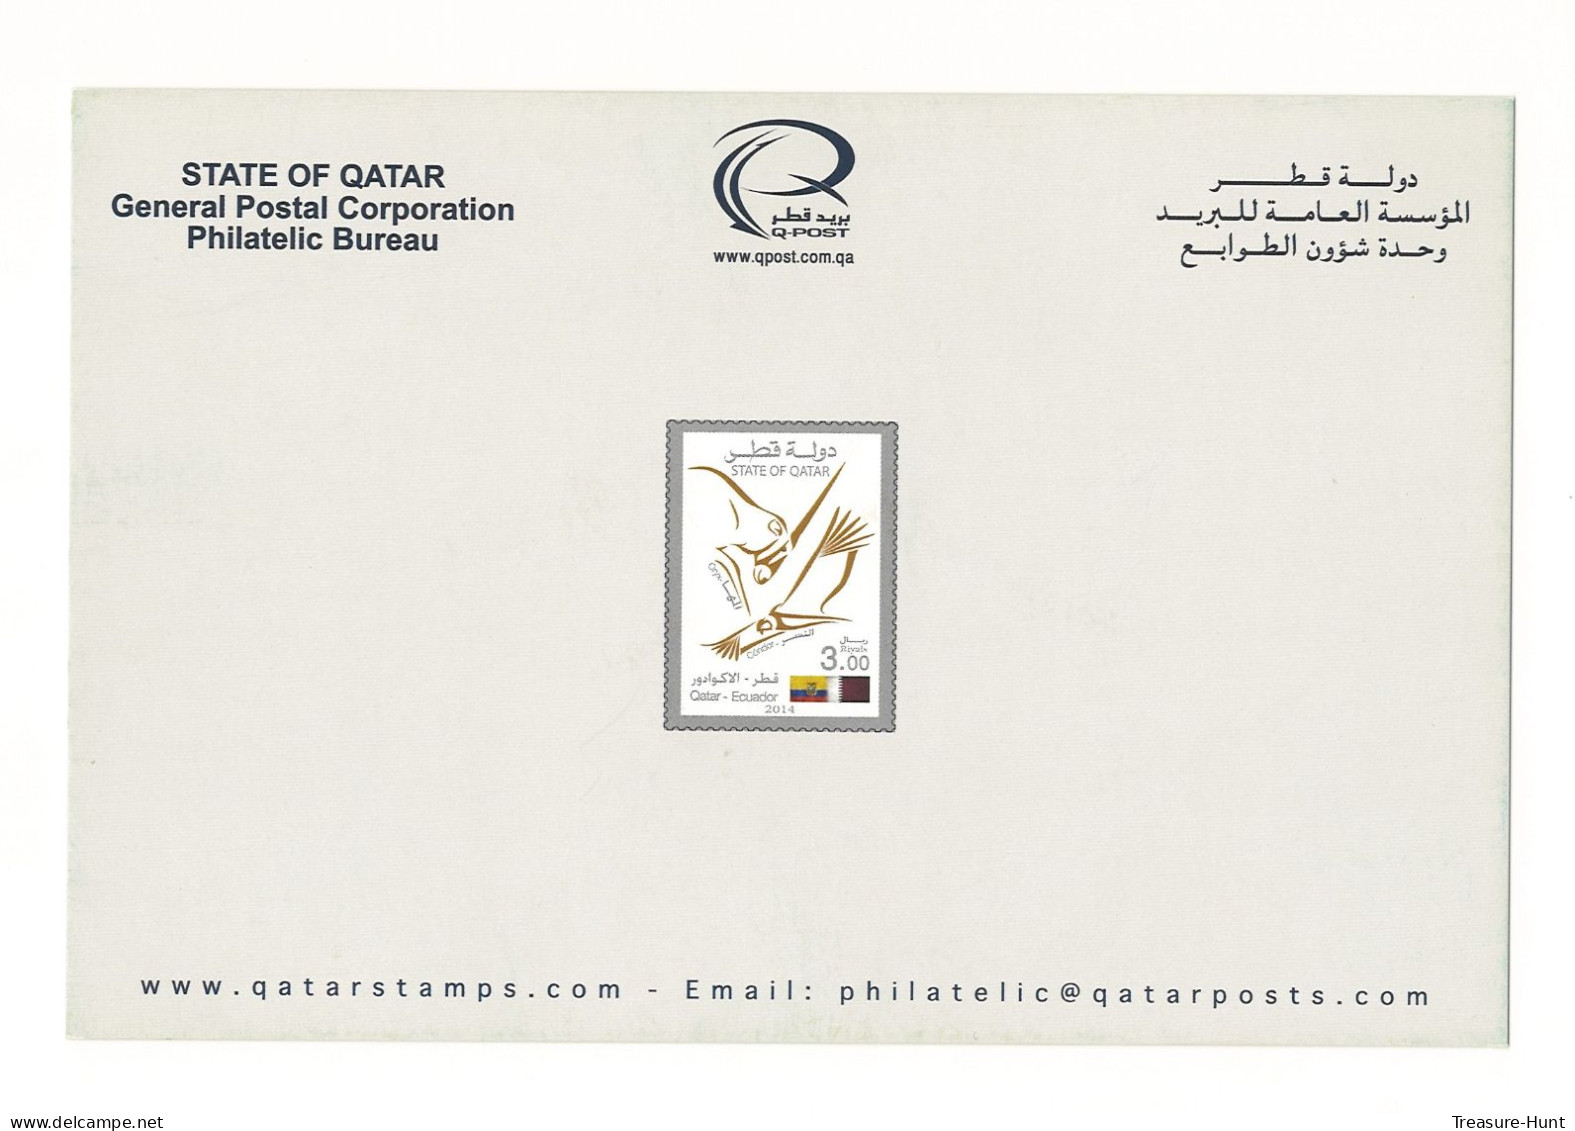 QATAR NEW STAMPS ISSUE BULLETIN / BROCHURE / POSTAL NOTICE - 2014 QATAR ECUADOR JOINT ISSUE, FALCON ORYX FLAG BIRD - Qatar